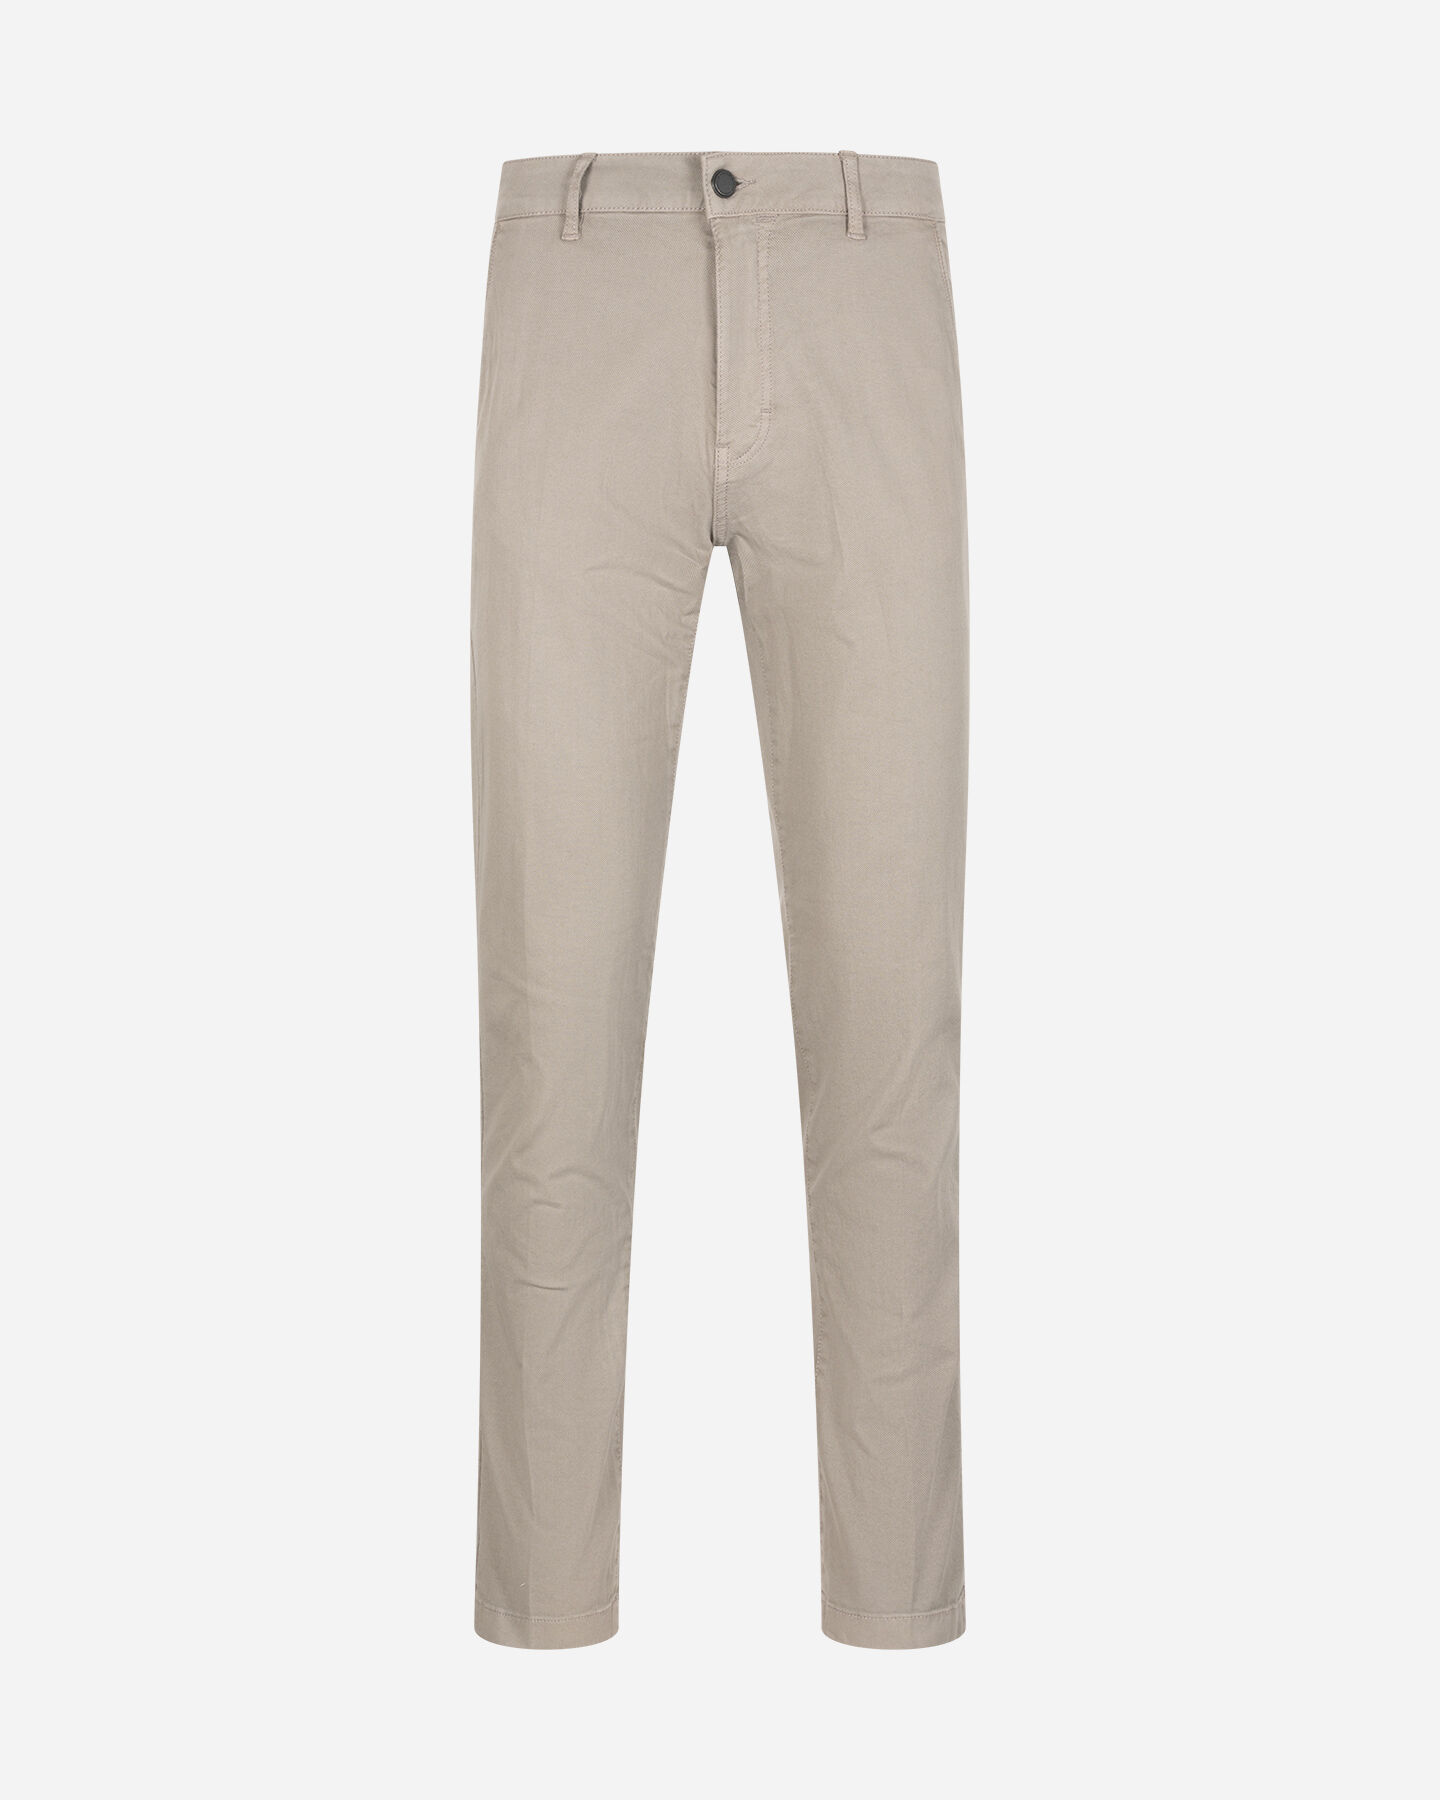  Pantalone BEST COMPANY COTTON LINE M S4131673|011|44 scatto 0